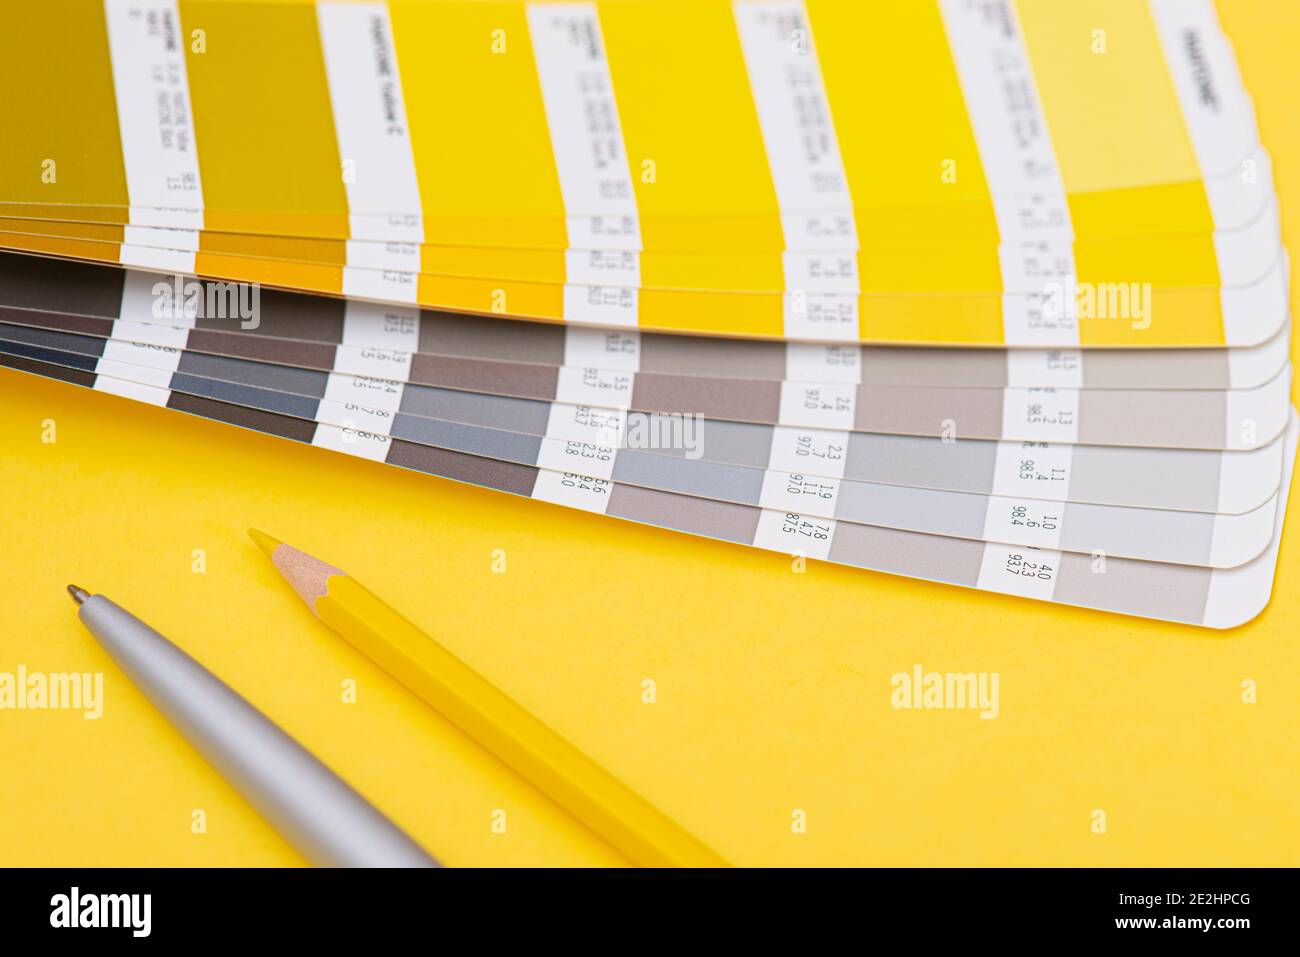 Farbpalette mit Farbe des Jahres 2021 - leuchtendes Gelb und neutrales Grau, Layout, Farbschablone Stockfoto